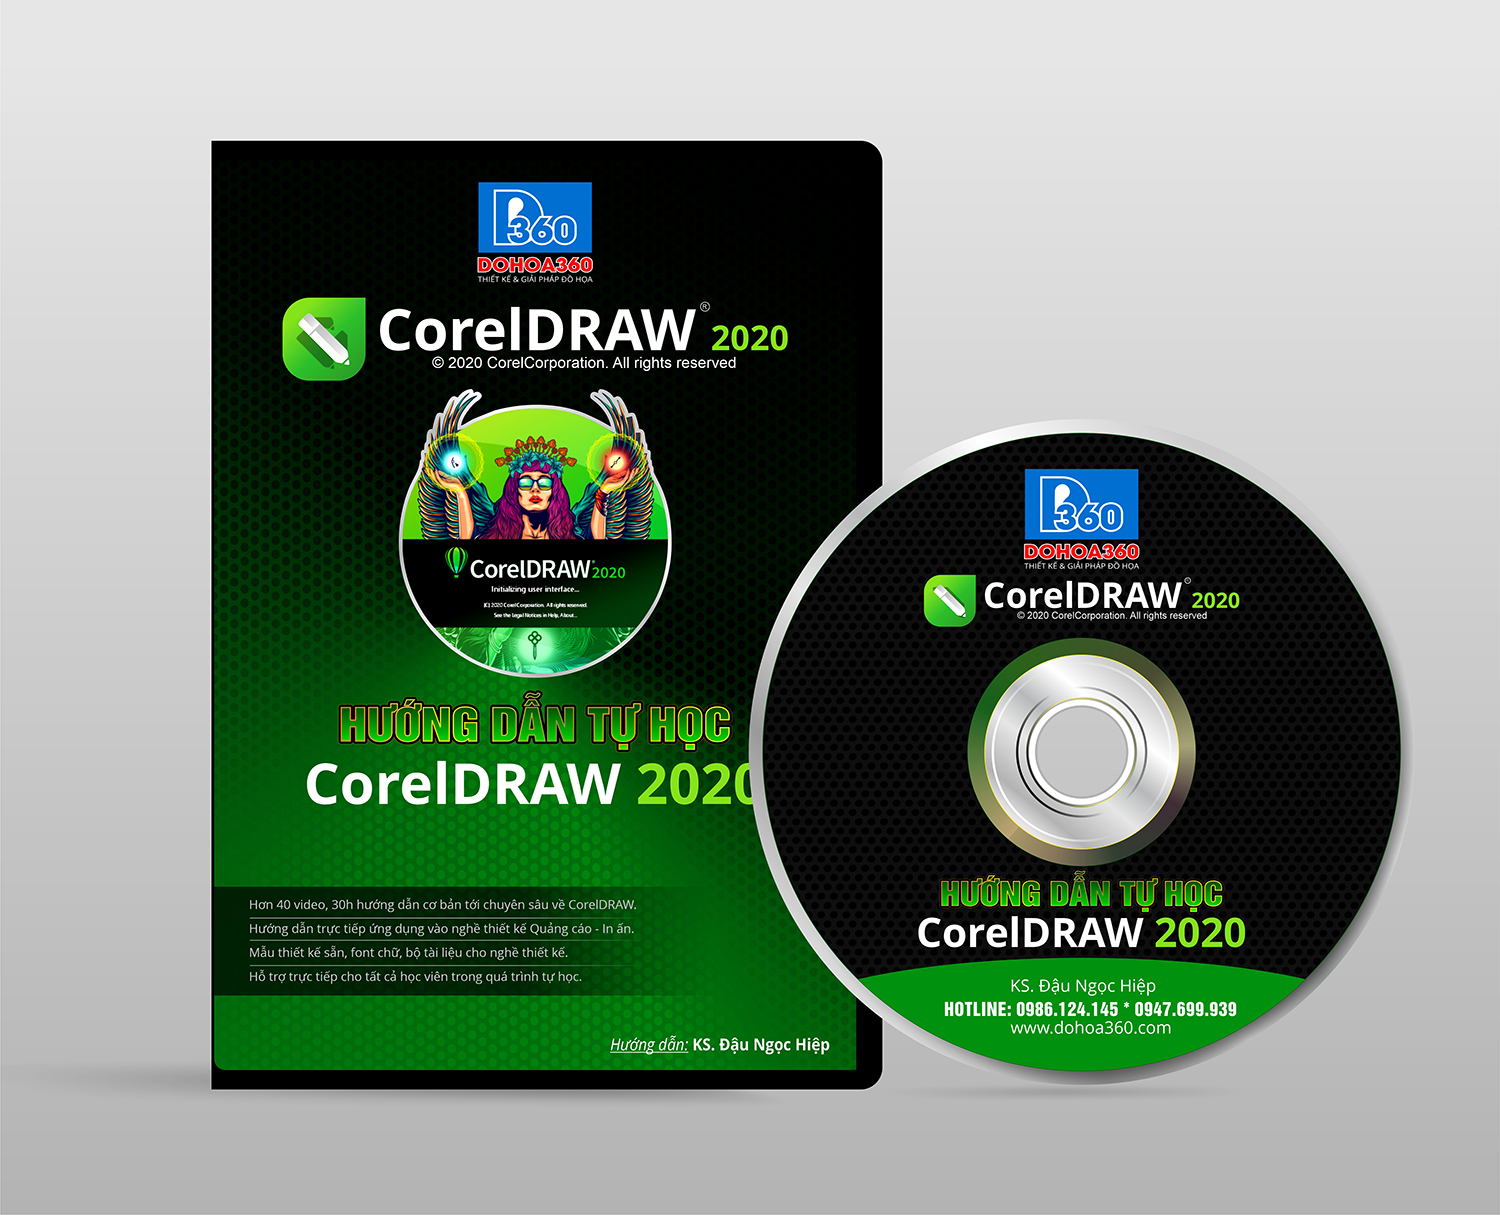 DVD tự học CorelDRAW 2020 cho Quảng cáo - In ấn - Thiết kế và giải là tài liệu tham khảo cực kỳ hữu ích cho những người làm thiết kế. Trong DVD này, bạn có thể tìm hiểu cách sử dụng mã vạch trong thiết kế quảng cáo và in ấn, từ cách tạo mã vạch đến cách chỉnh sửa font chữ. Hãy tìm hiểu thêm về DVD tự học CorelDRAW 2020 trong hình ảnh liên quan.